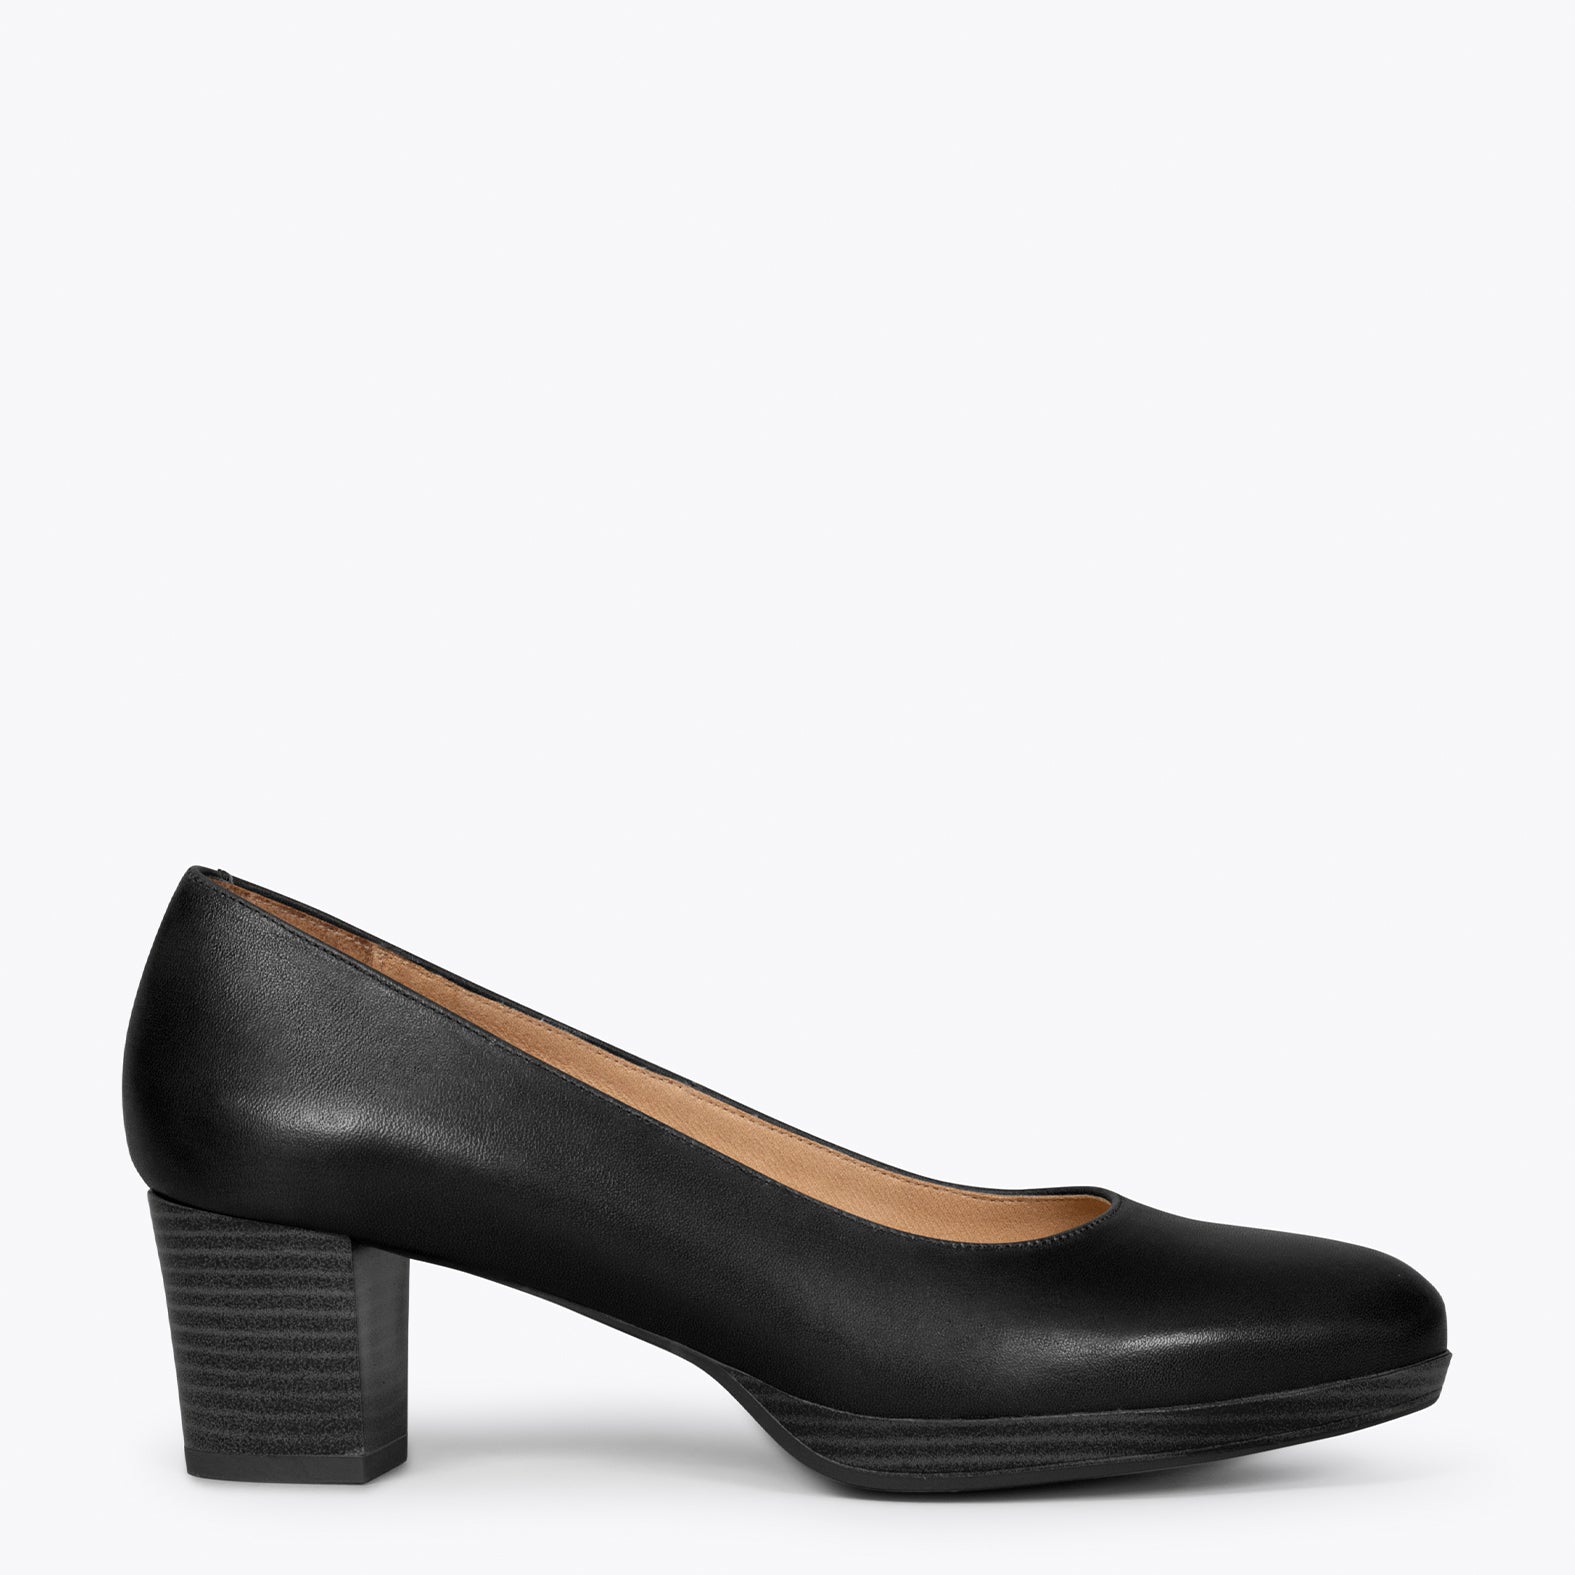 AZAFATA S – Zapatos de mujer con tacón bajo y plataforma NEGRO